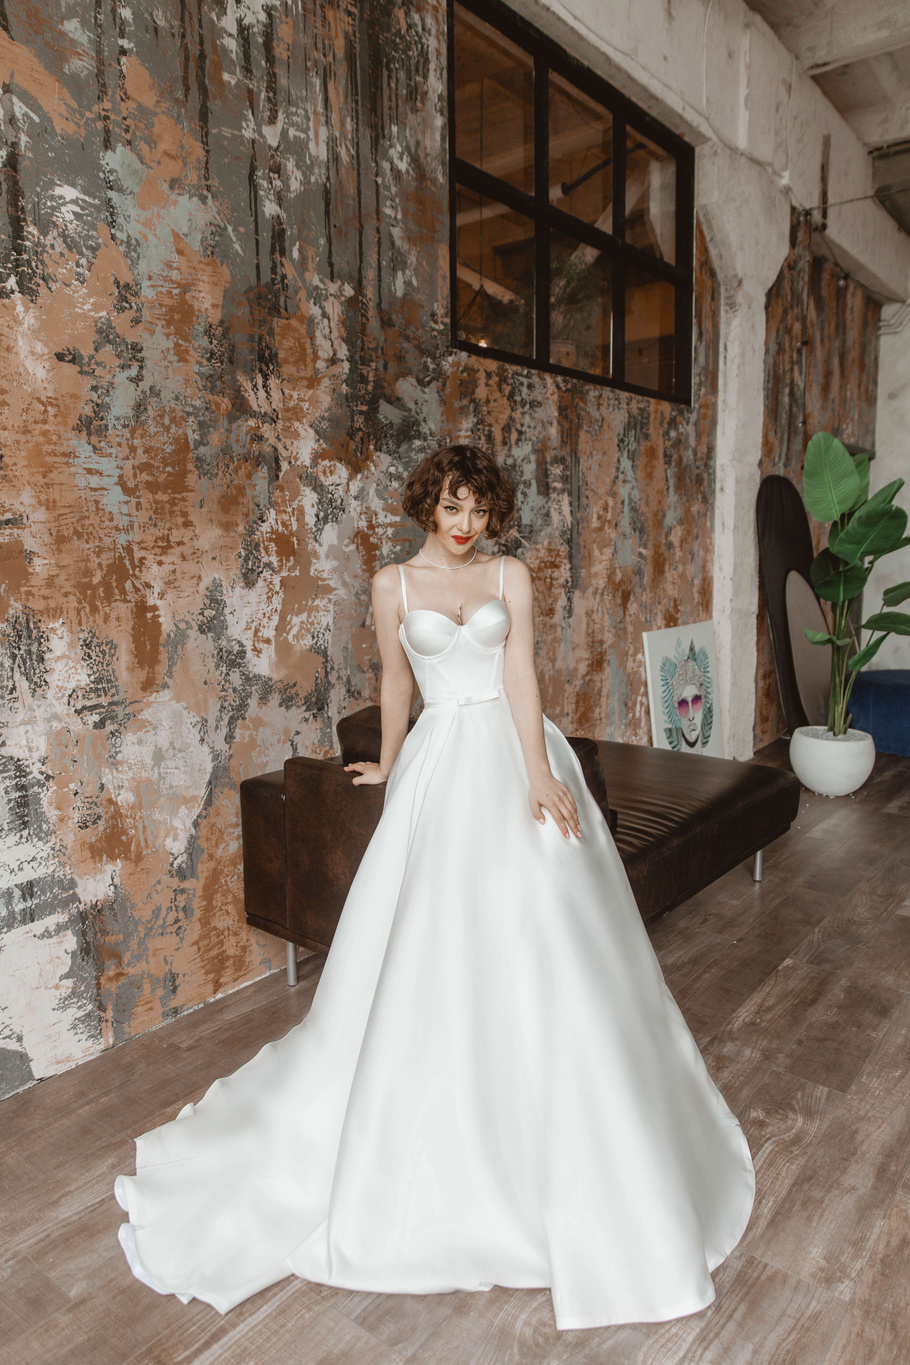 Купить свадебное платье «Тония» Анже Этуаль из коллекции 2021 года в салоне «Мэри Трюфель»